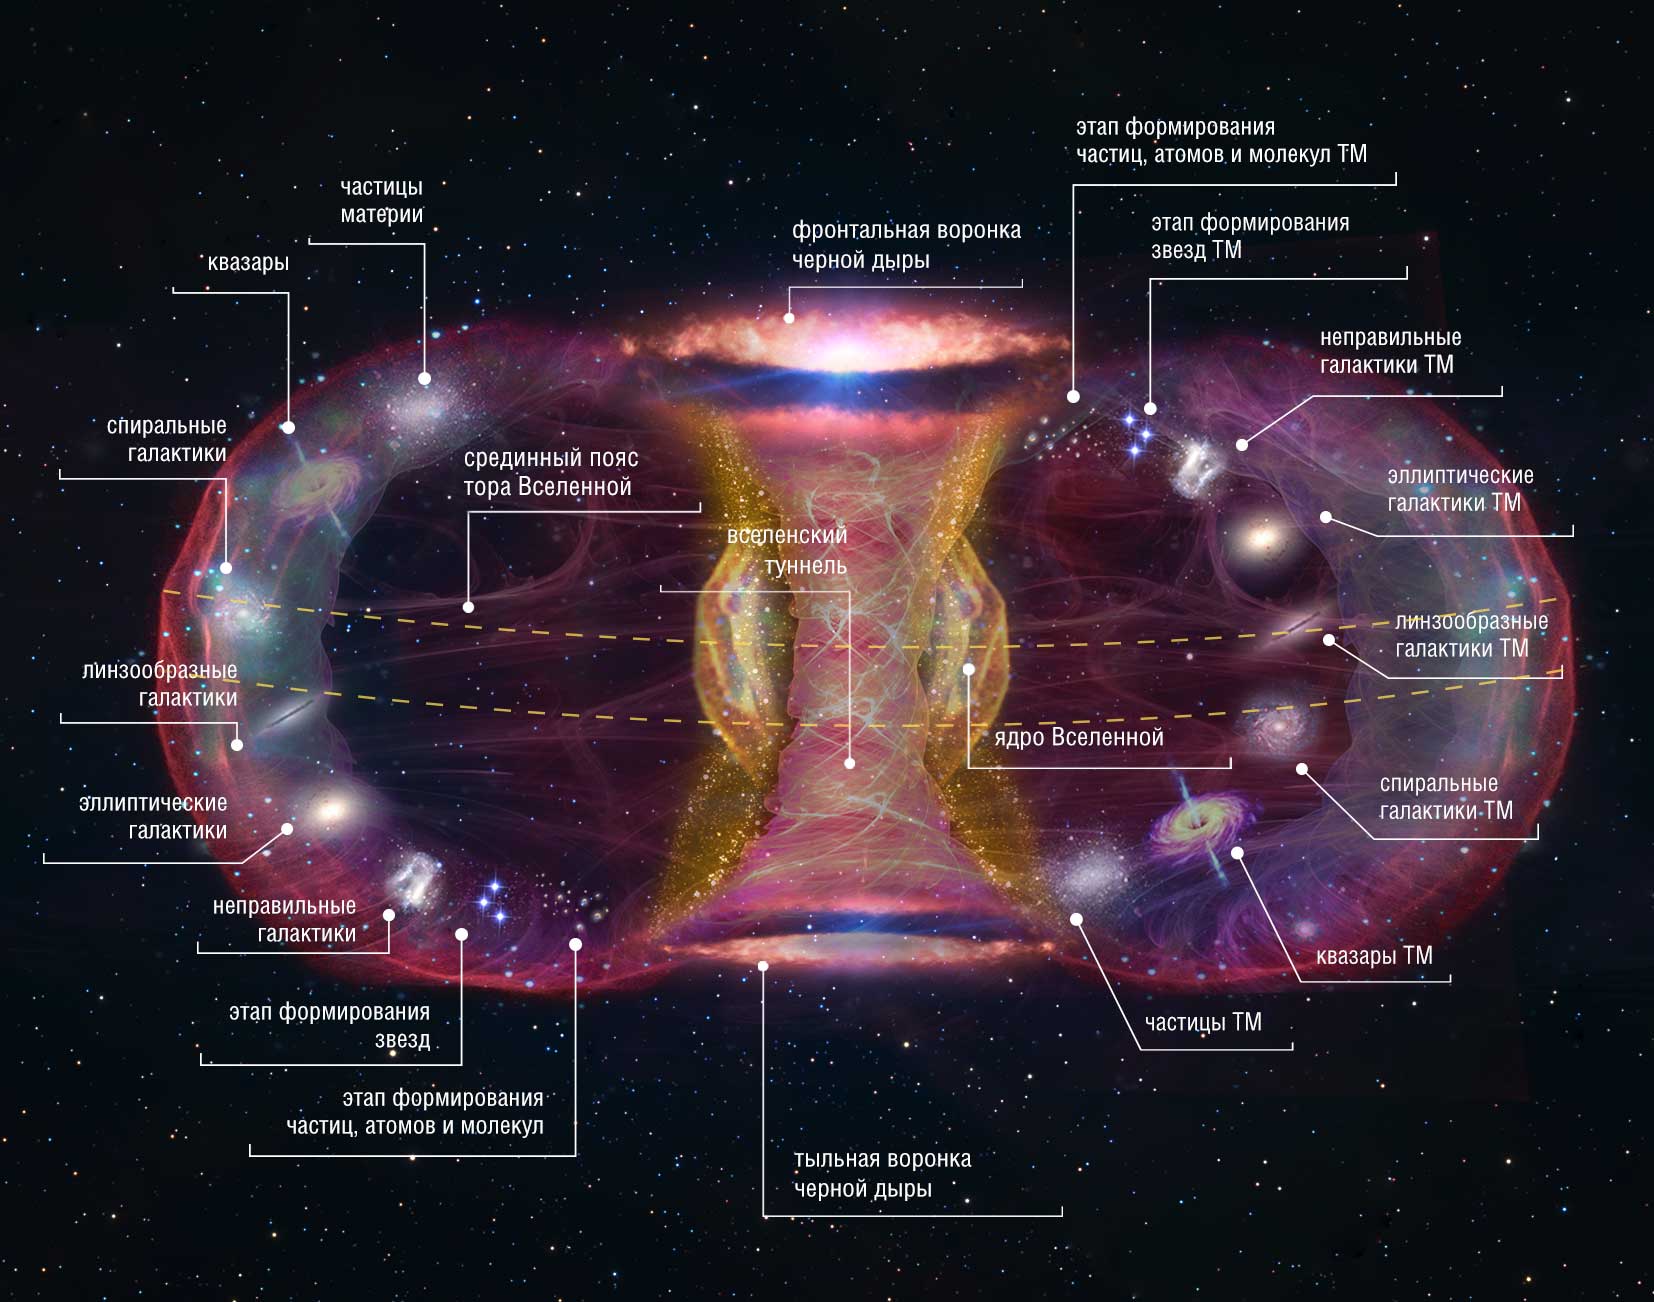 Название материи. Структура Вселенной схема астрономия. Строение Вселенной схема структуры астрономия. Системы галактик и крупномасштабная структура Вселенной. Схема современной структуры Вселенной.